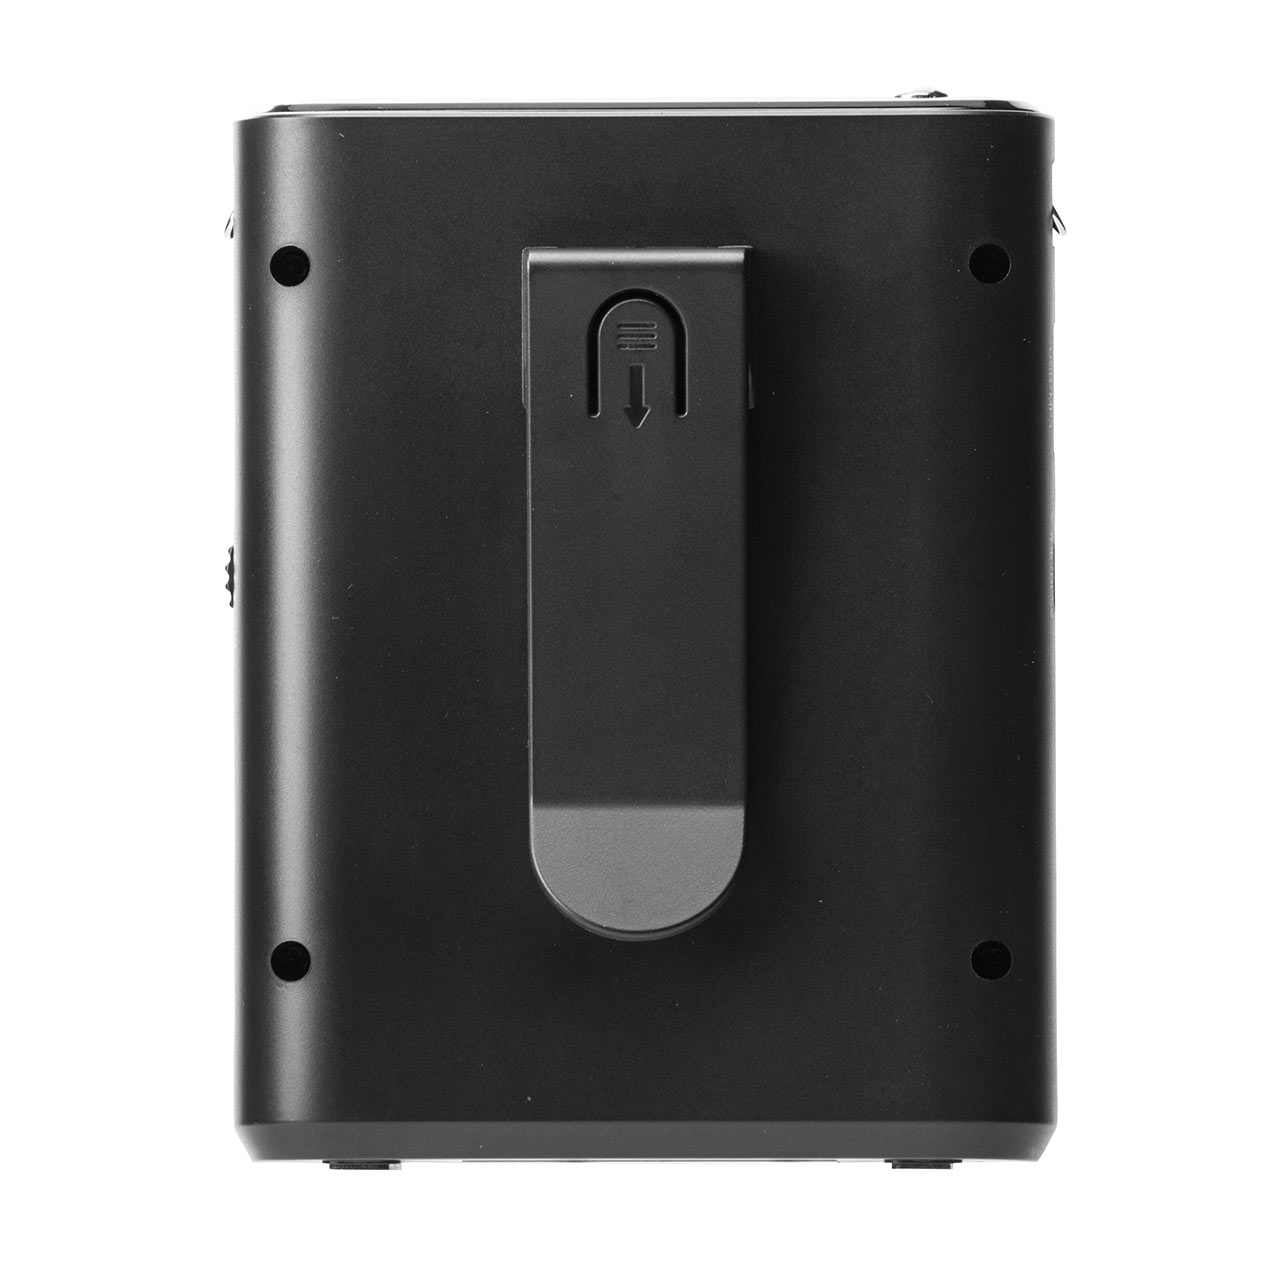 ポータブル拡声器 10W出力 有線マイク 無線マイク ワイヤレス 各1個つき USBメモリー microSD 音楽再生 イベント 店頭販売 選挙 400-SP079